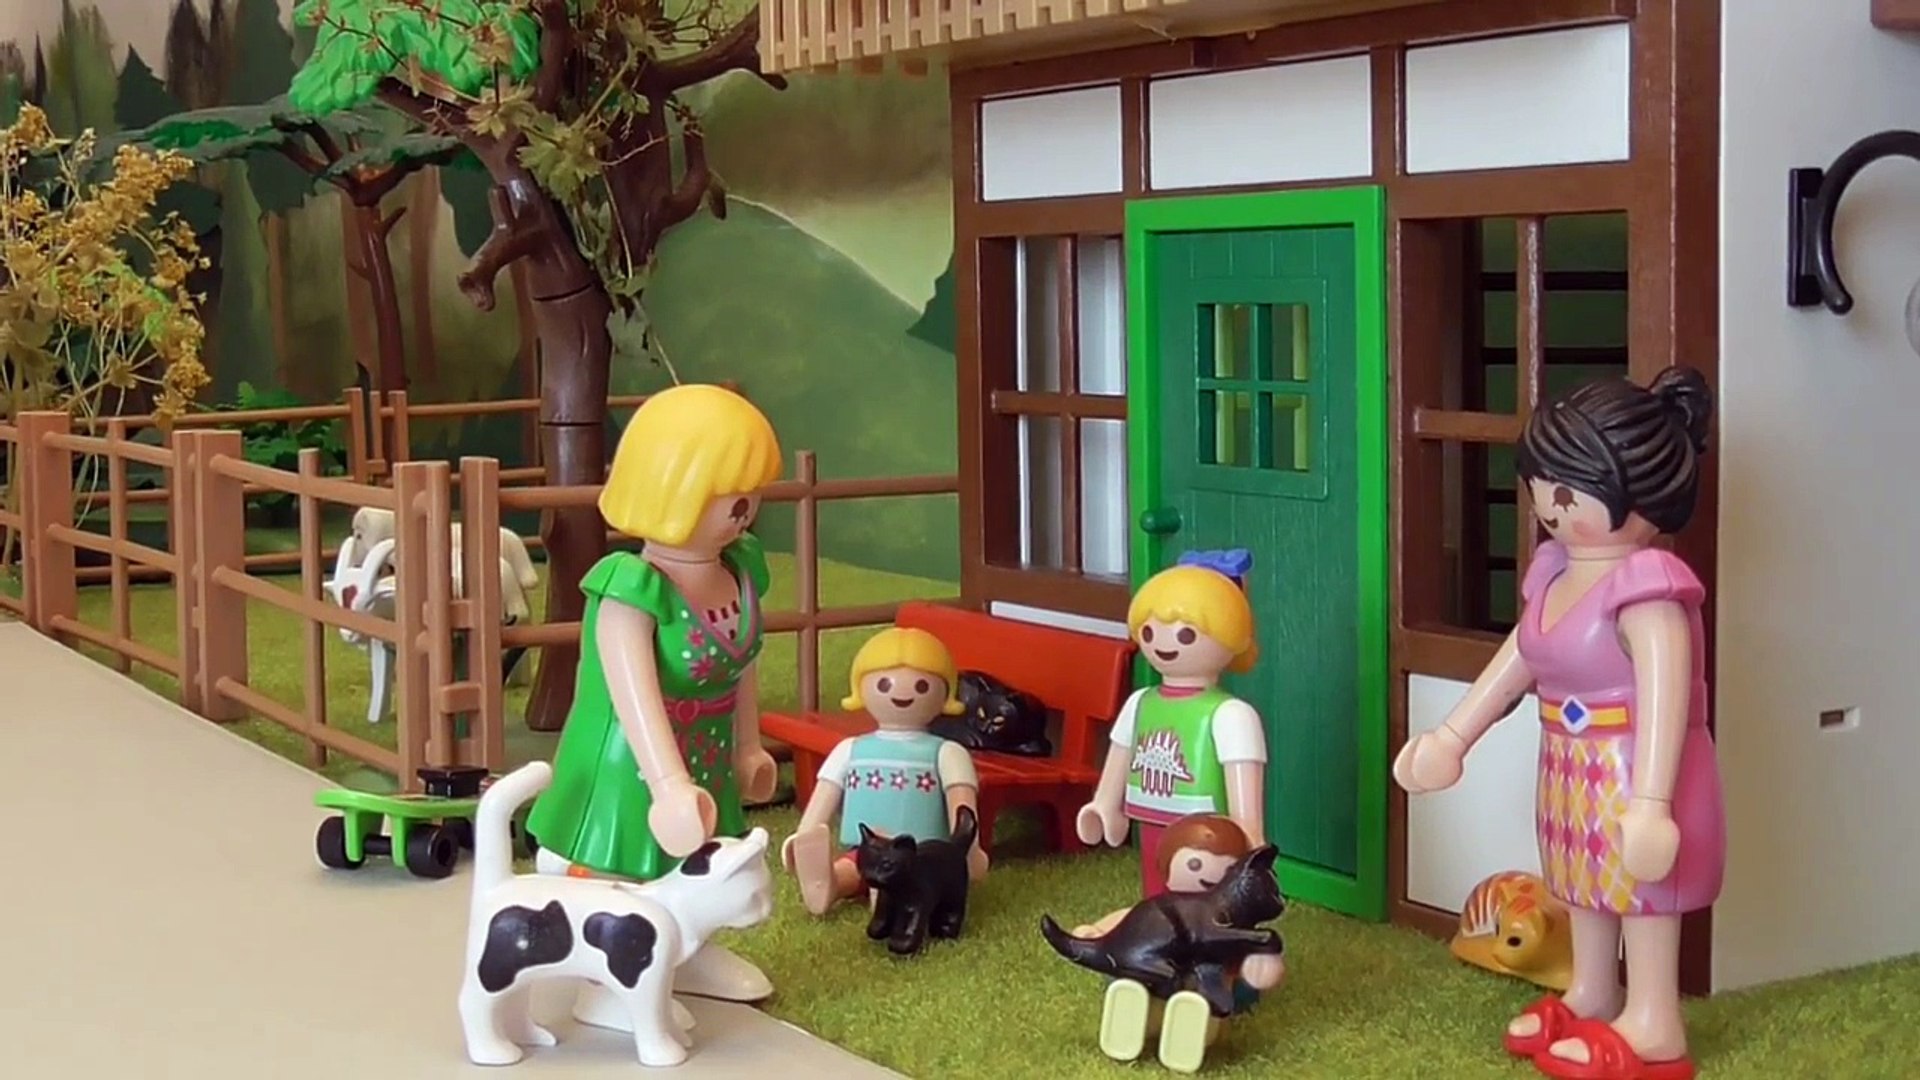 Playmobil Film deutsch Familie Hauser bekommt eine Katze family stories |  mirecraft - video Dailymotion